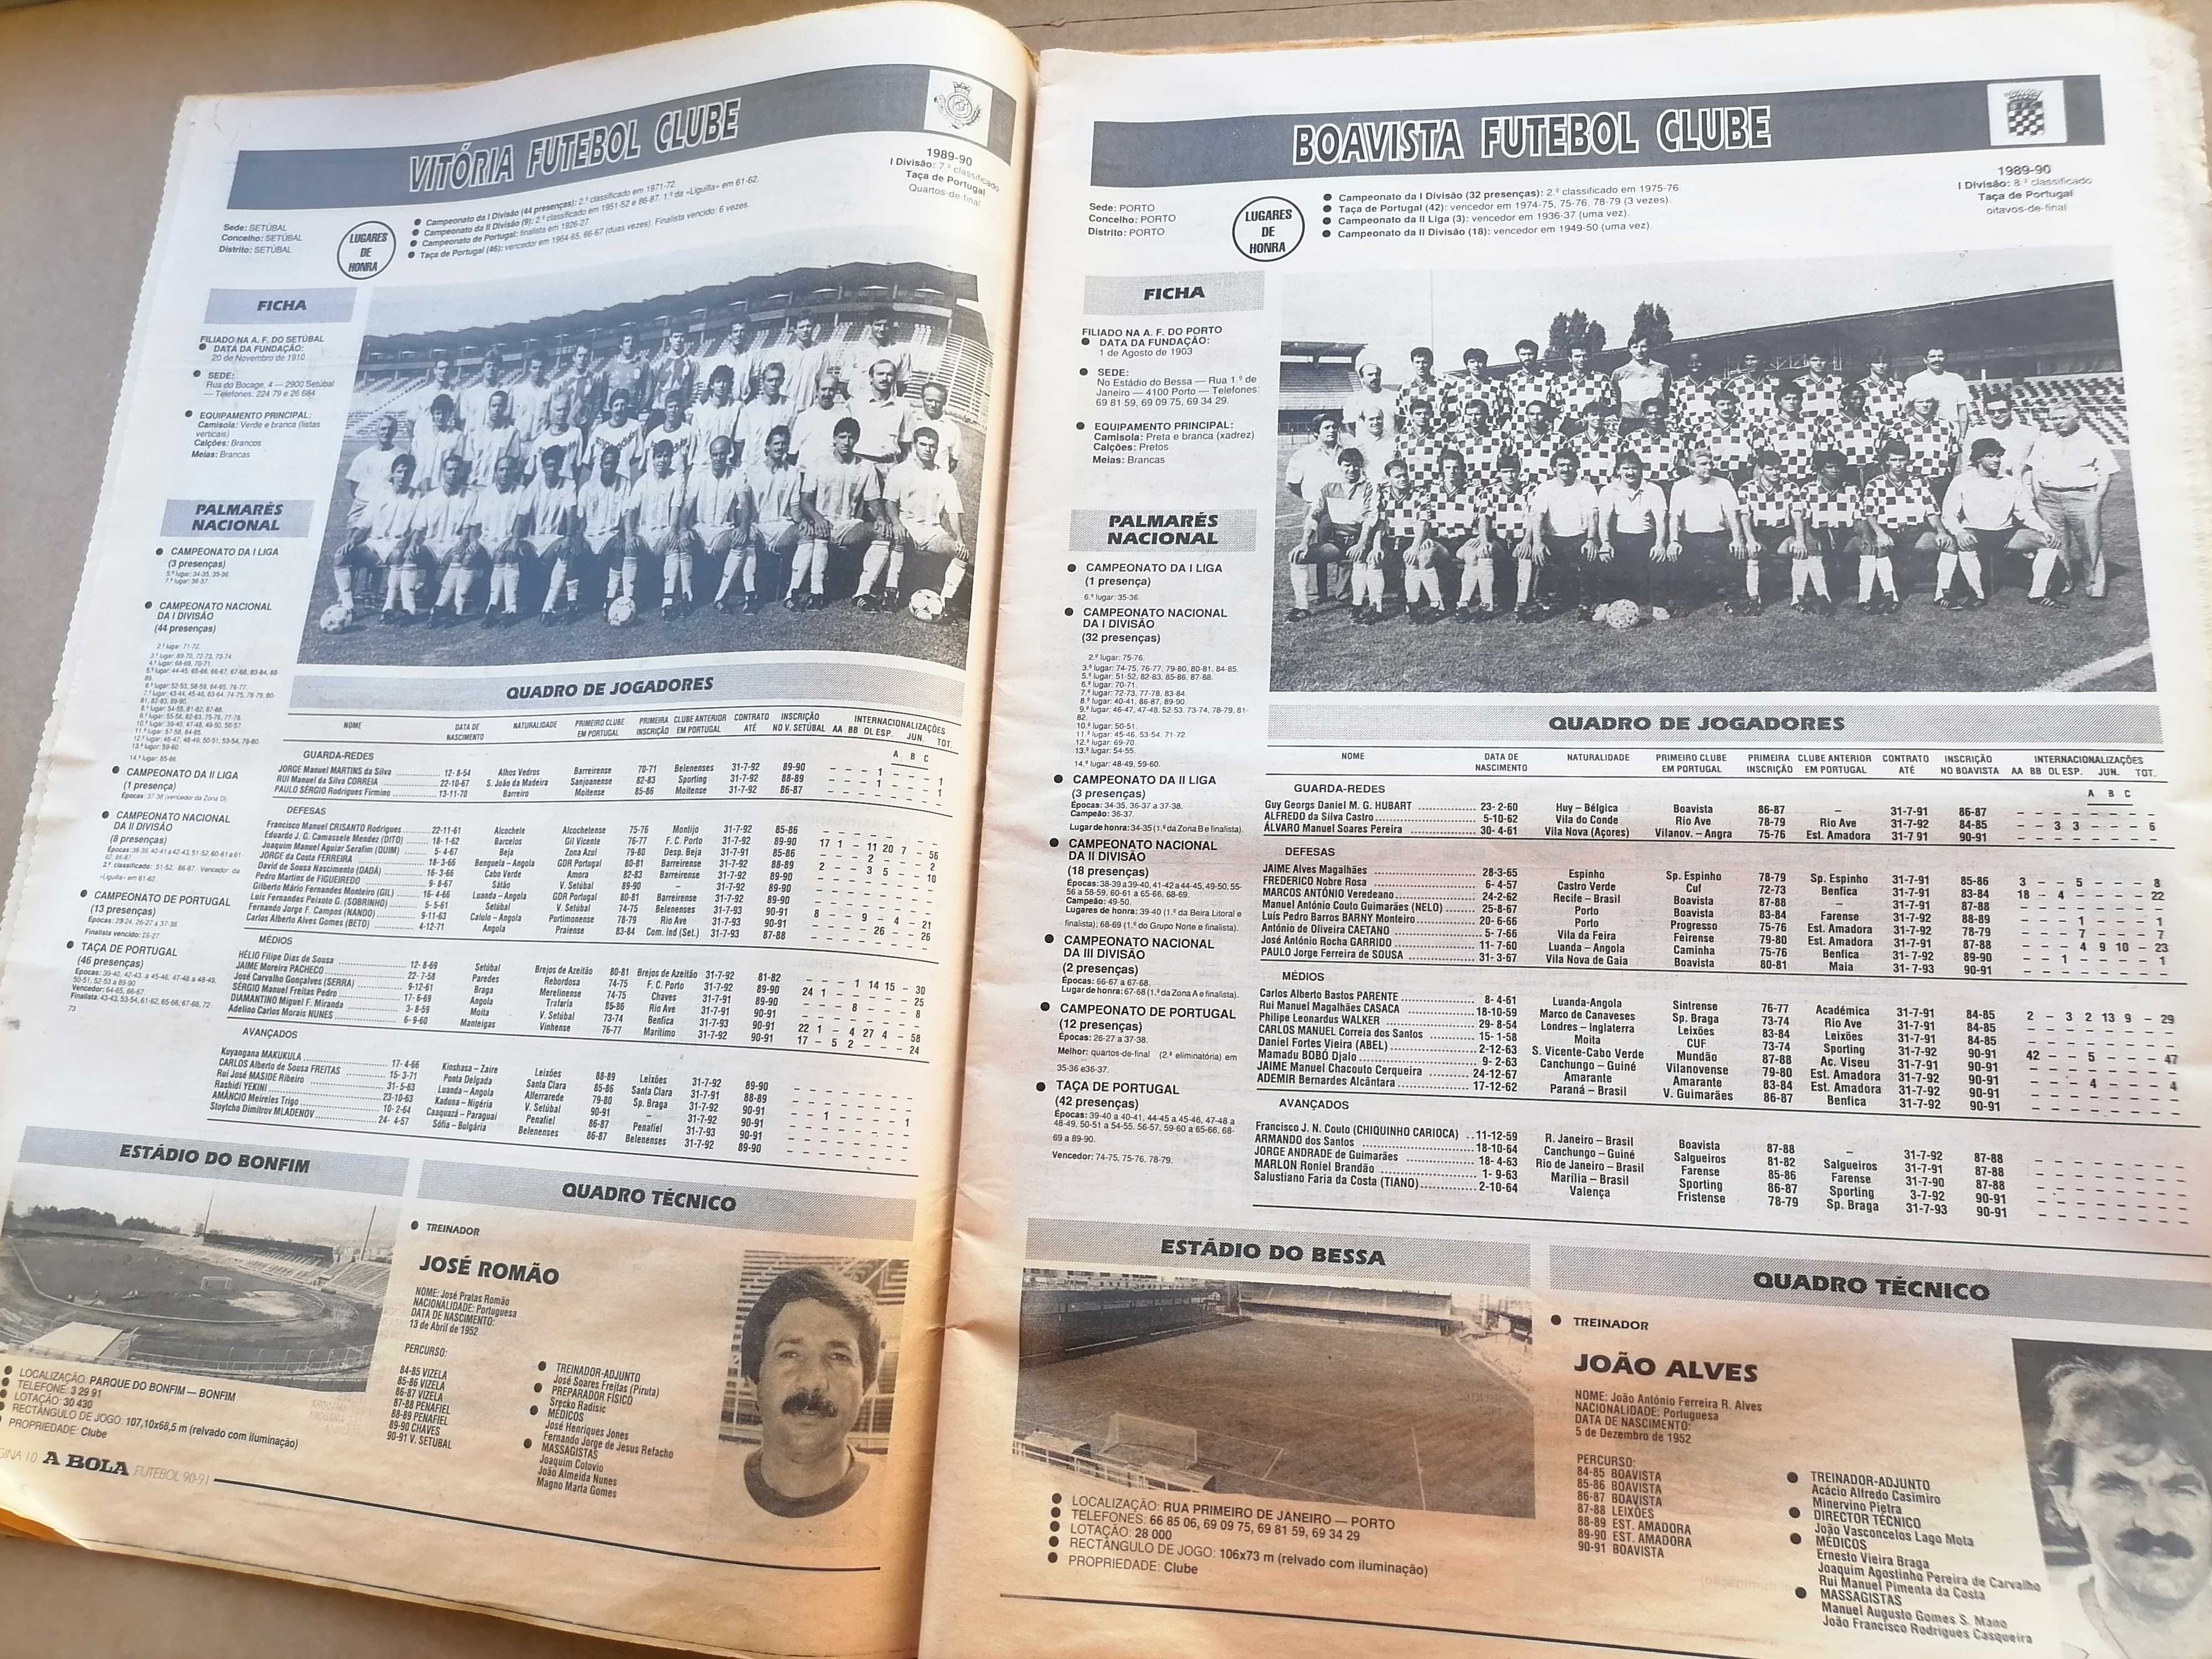 Cadernos de A BOLA Nº 19 - Futebol Época 90/91 *Completo*